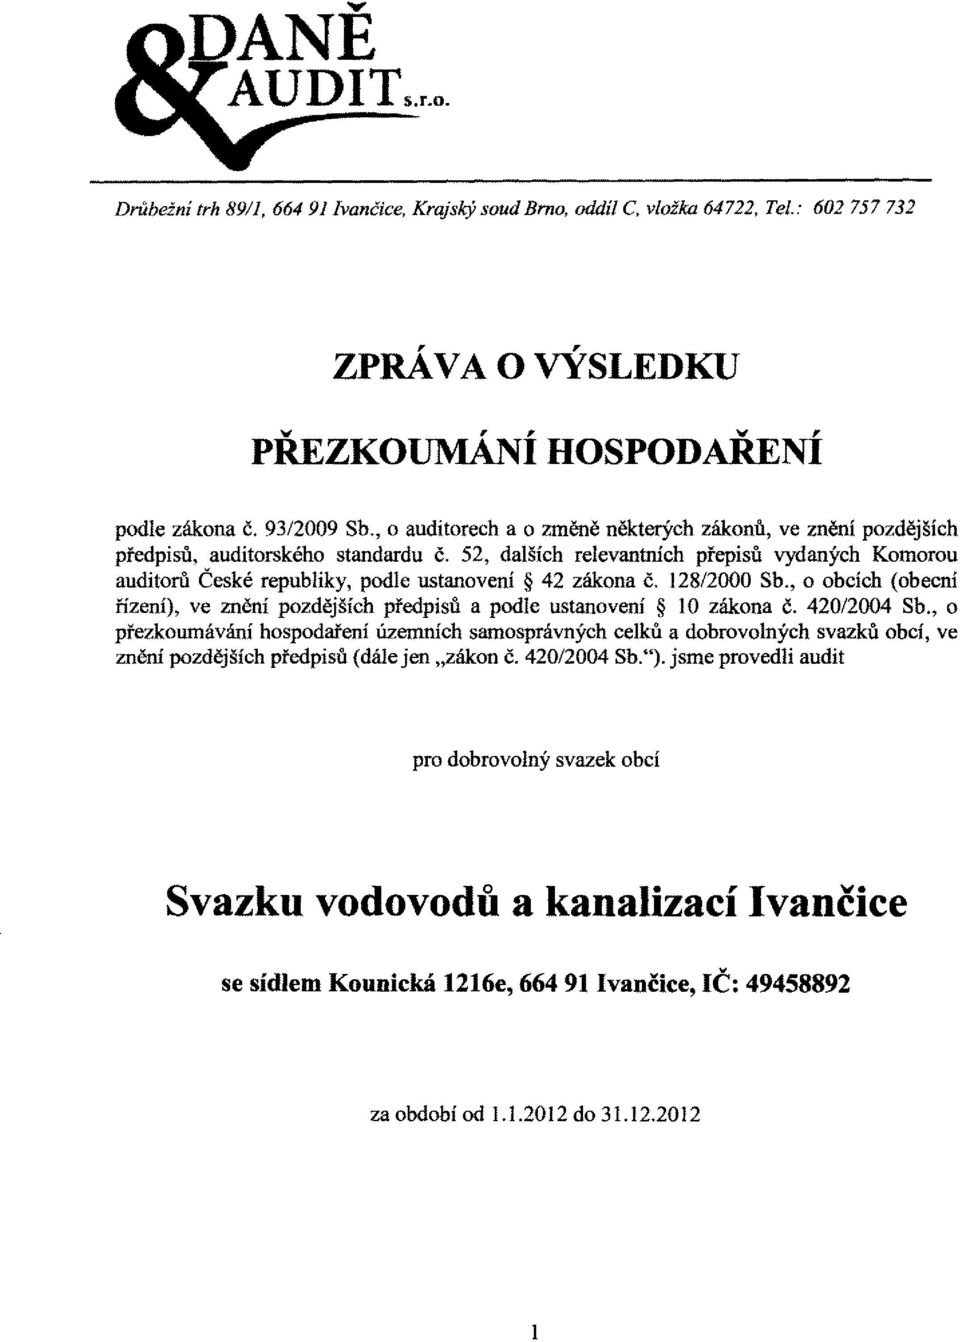 52, dalších relevantních přepisů vydaných Komorou auditorů České republiky, podle ustanovení 42 zákona Č. 12812000 Sb.